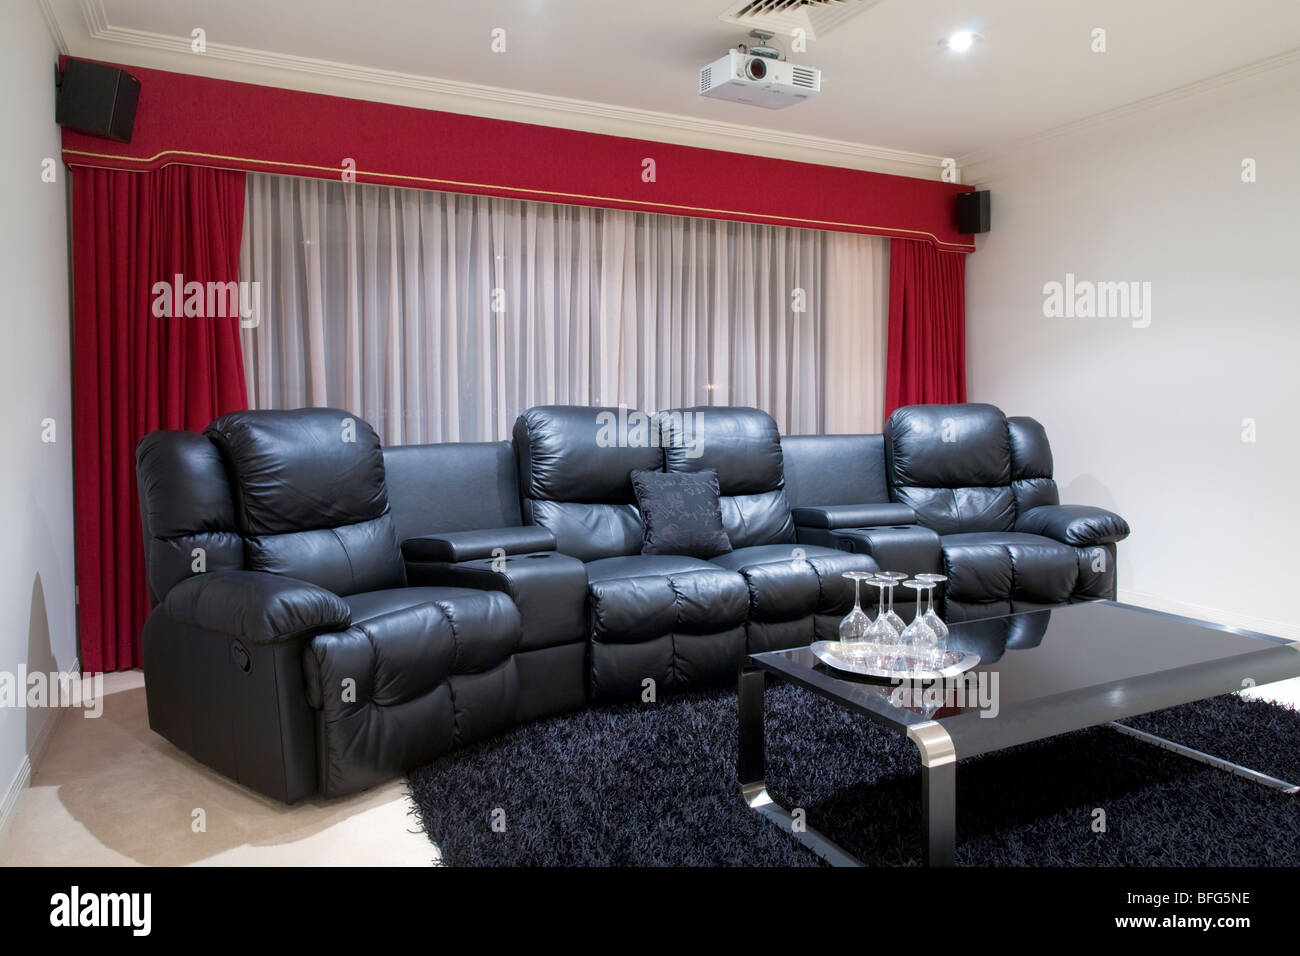 Heimkino-Raum mit schwarzen Ledersesseln liege, rote Vorhänge, schwarzen Teppich und Tisch mit Weingläsern Stockfoto